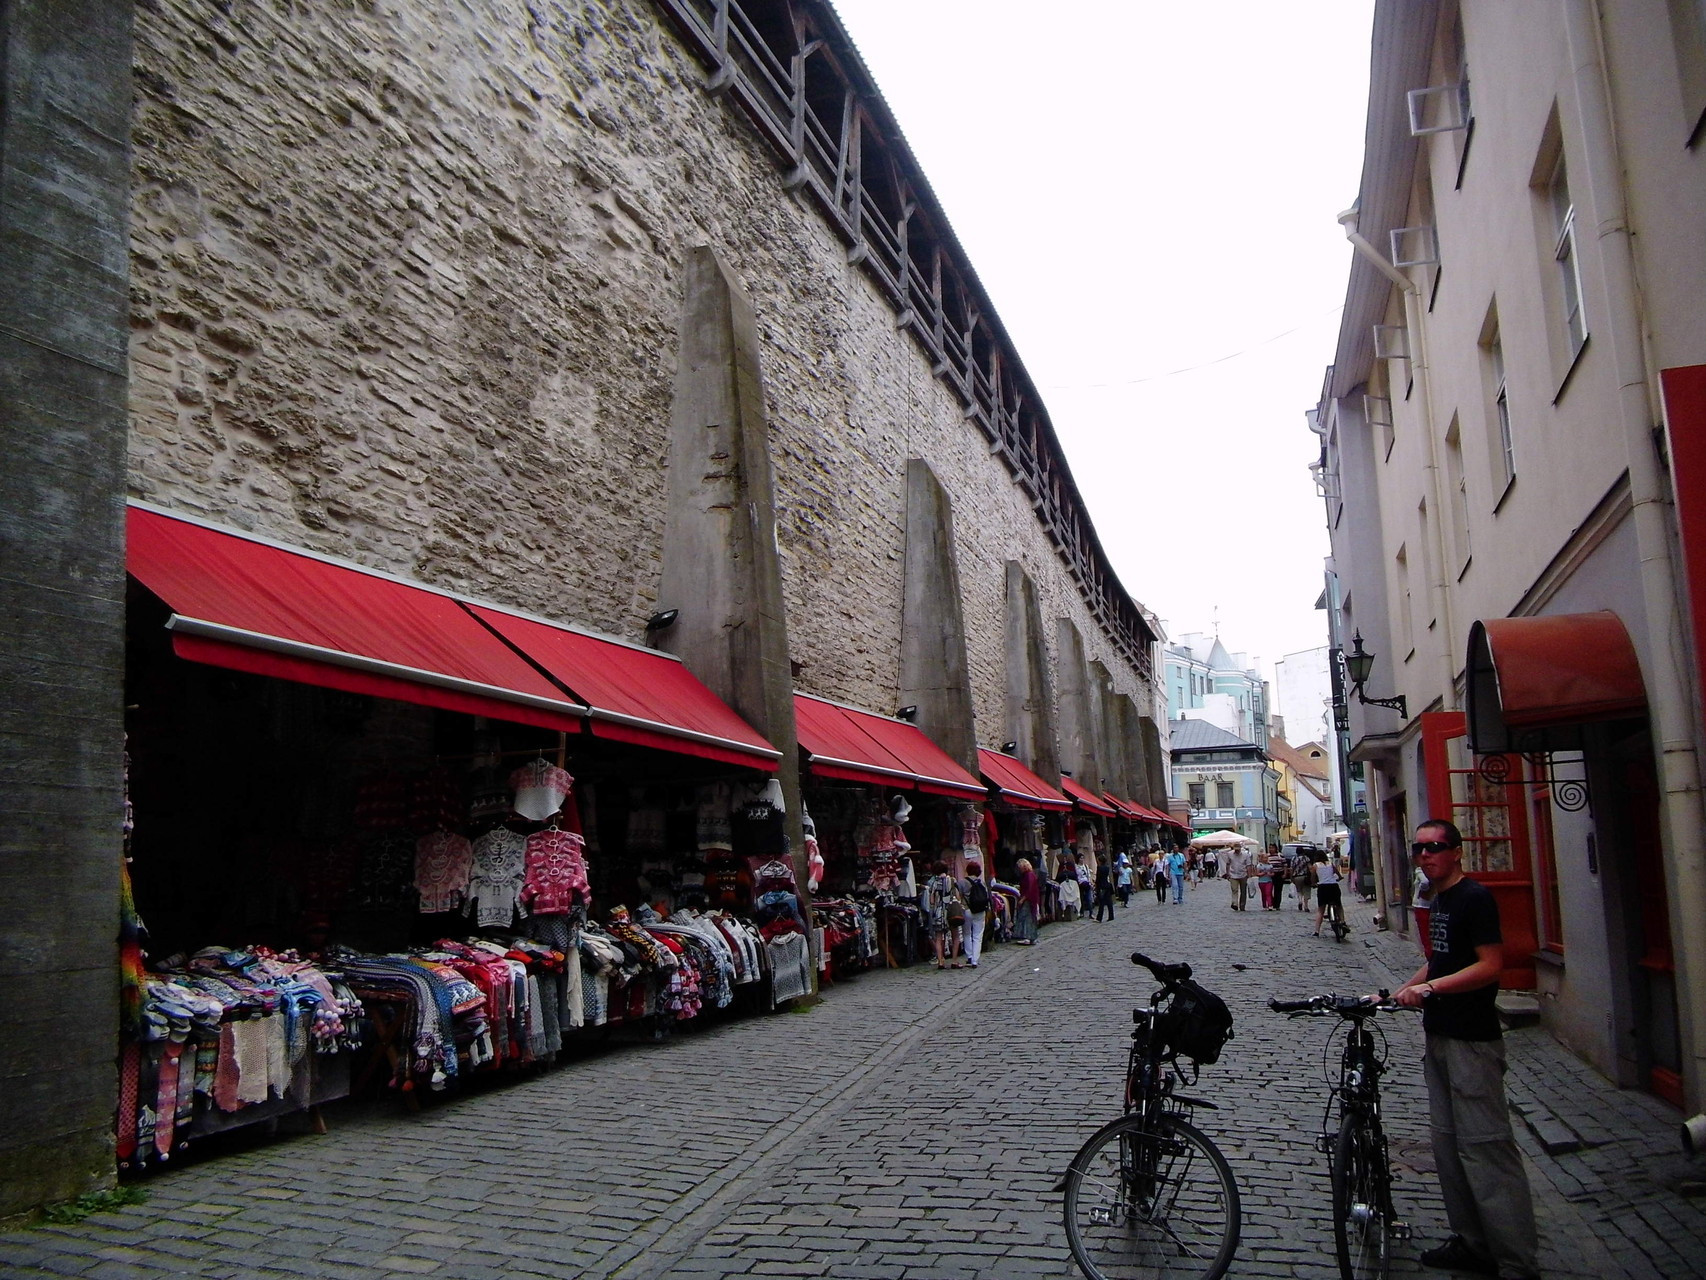 Noch heute gibt es in Tallinn die mittelalterlichen Märkte in den Marktnischen der alten Burgmauer